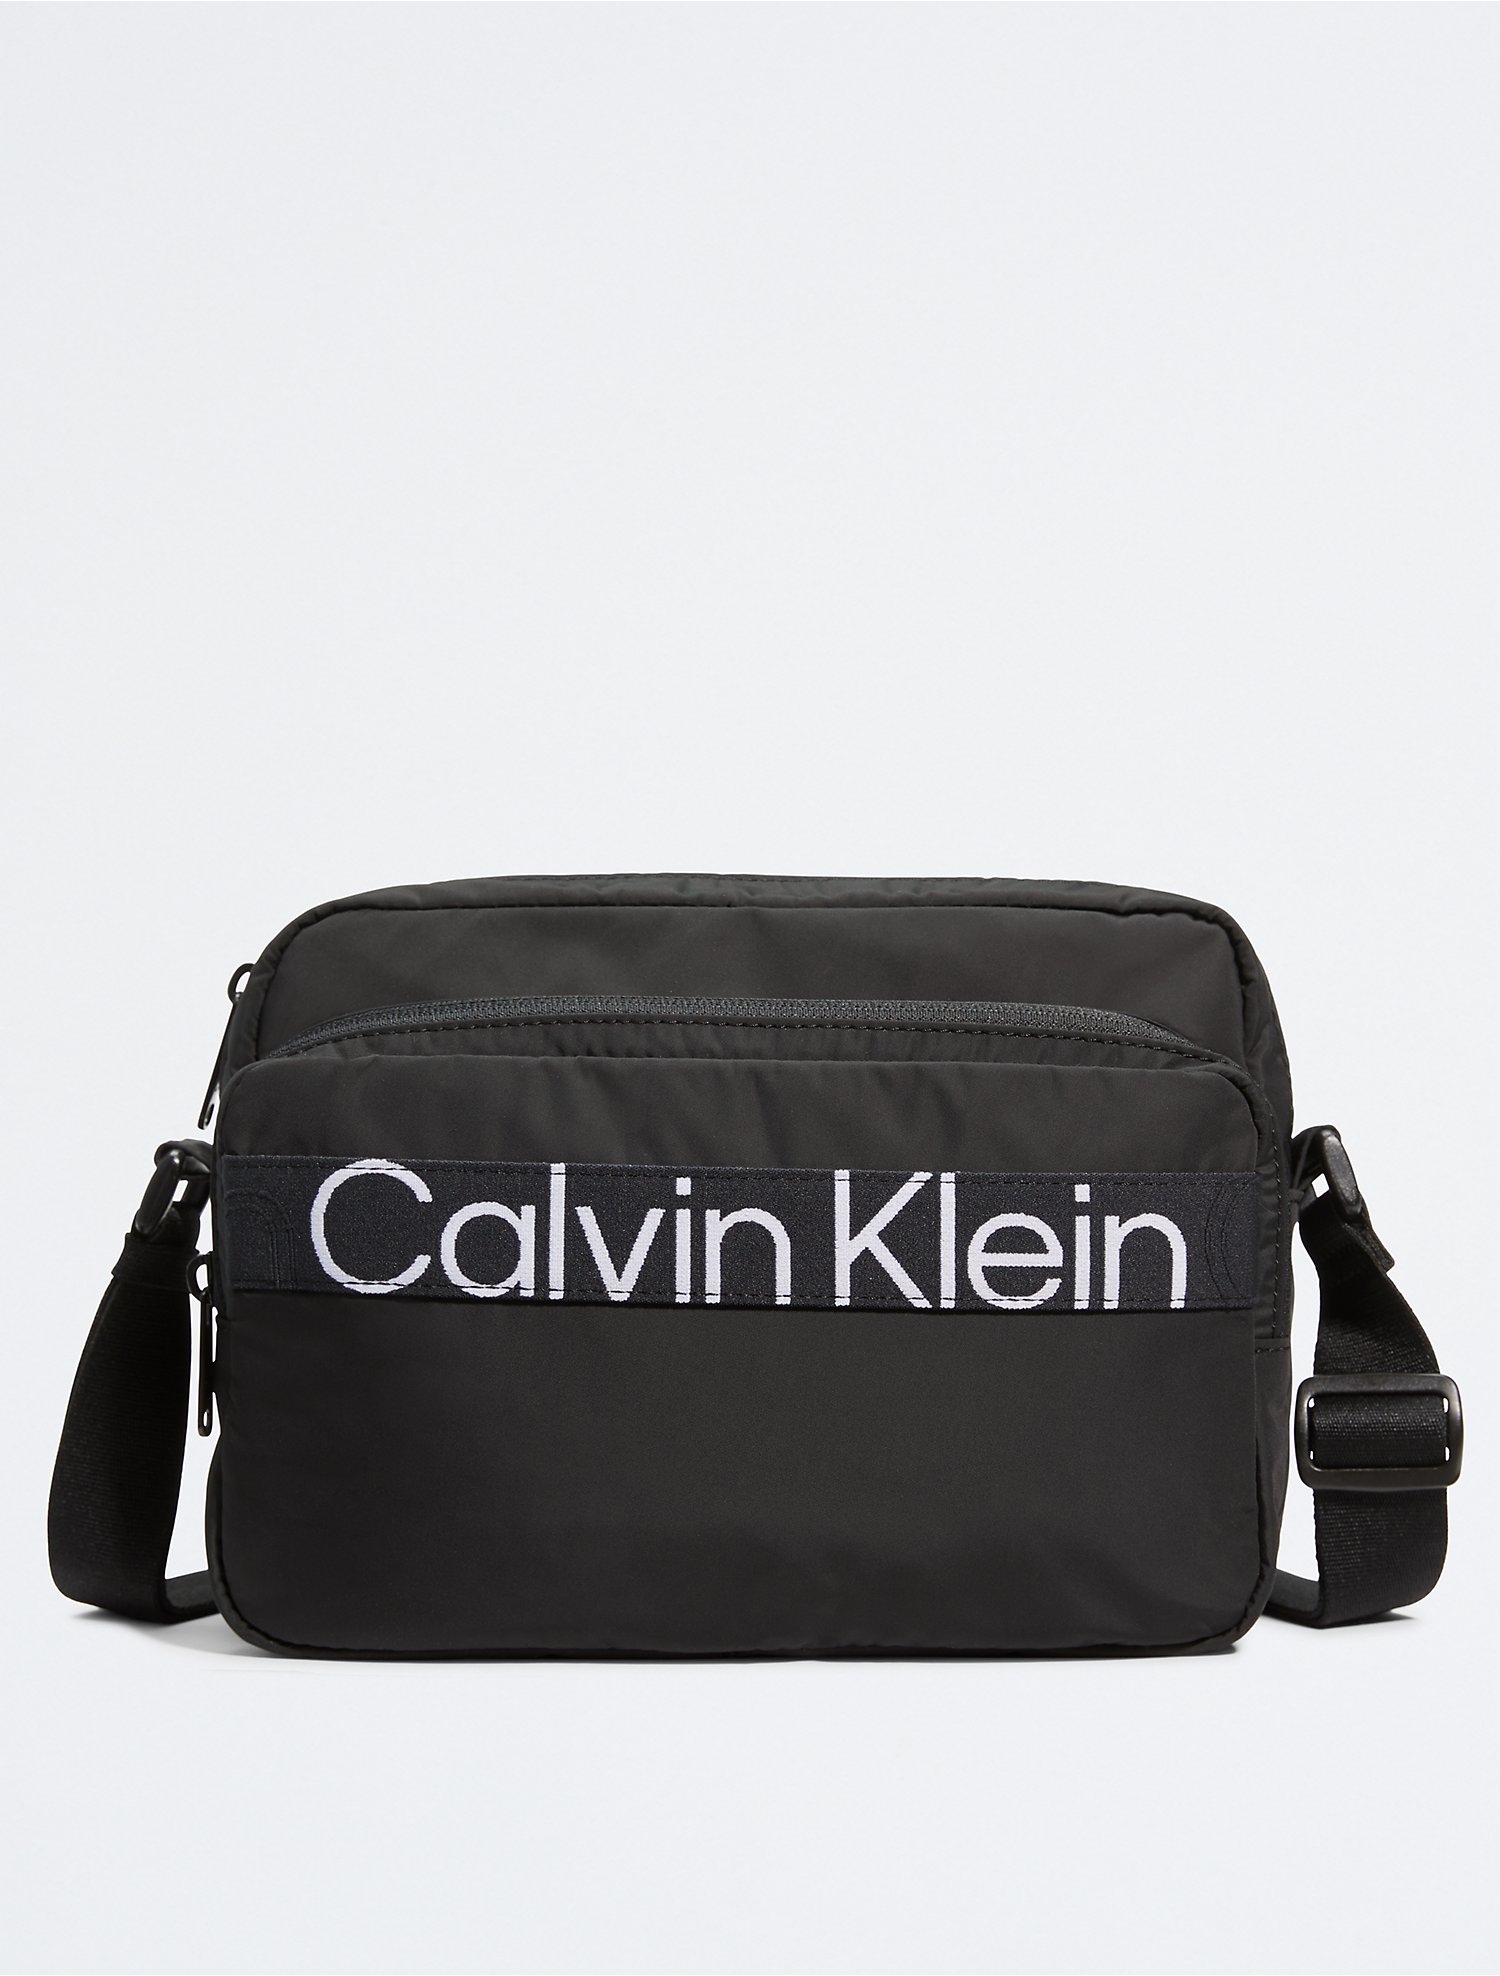 profiel Rondlopen Hechting CK Sport Active Icon Crossbody Camera Bag | Calvin Klein